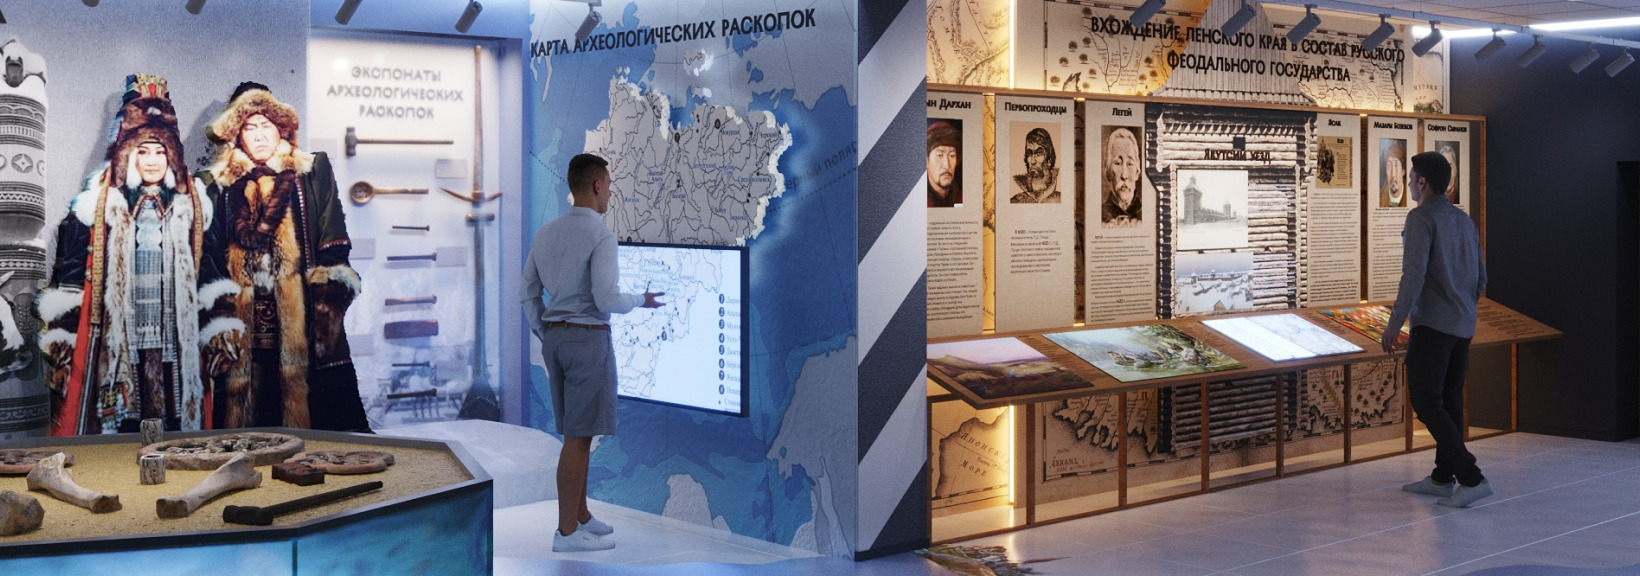 Дизайн-проект выставочного пространства для Президентского центра М. Е. Николаева (Николаев-Центр)